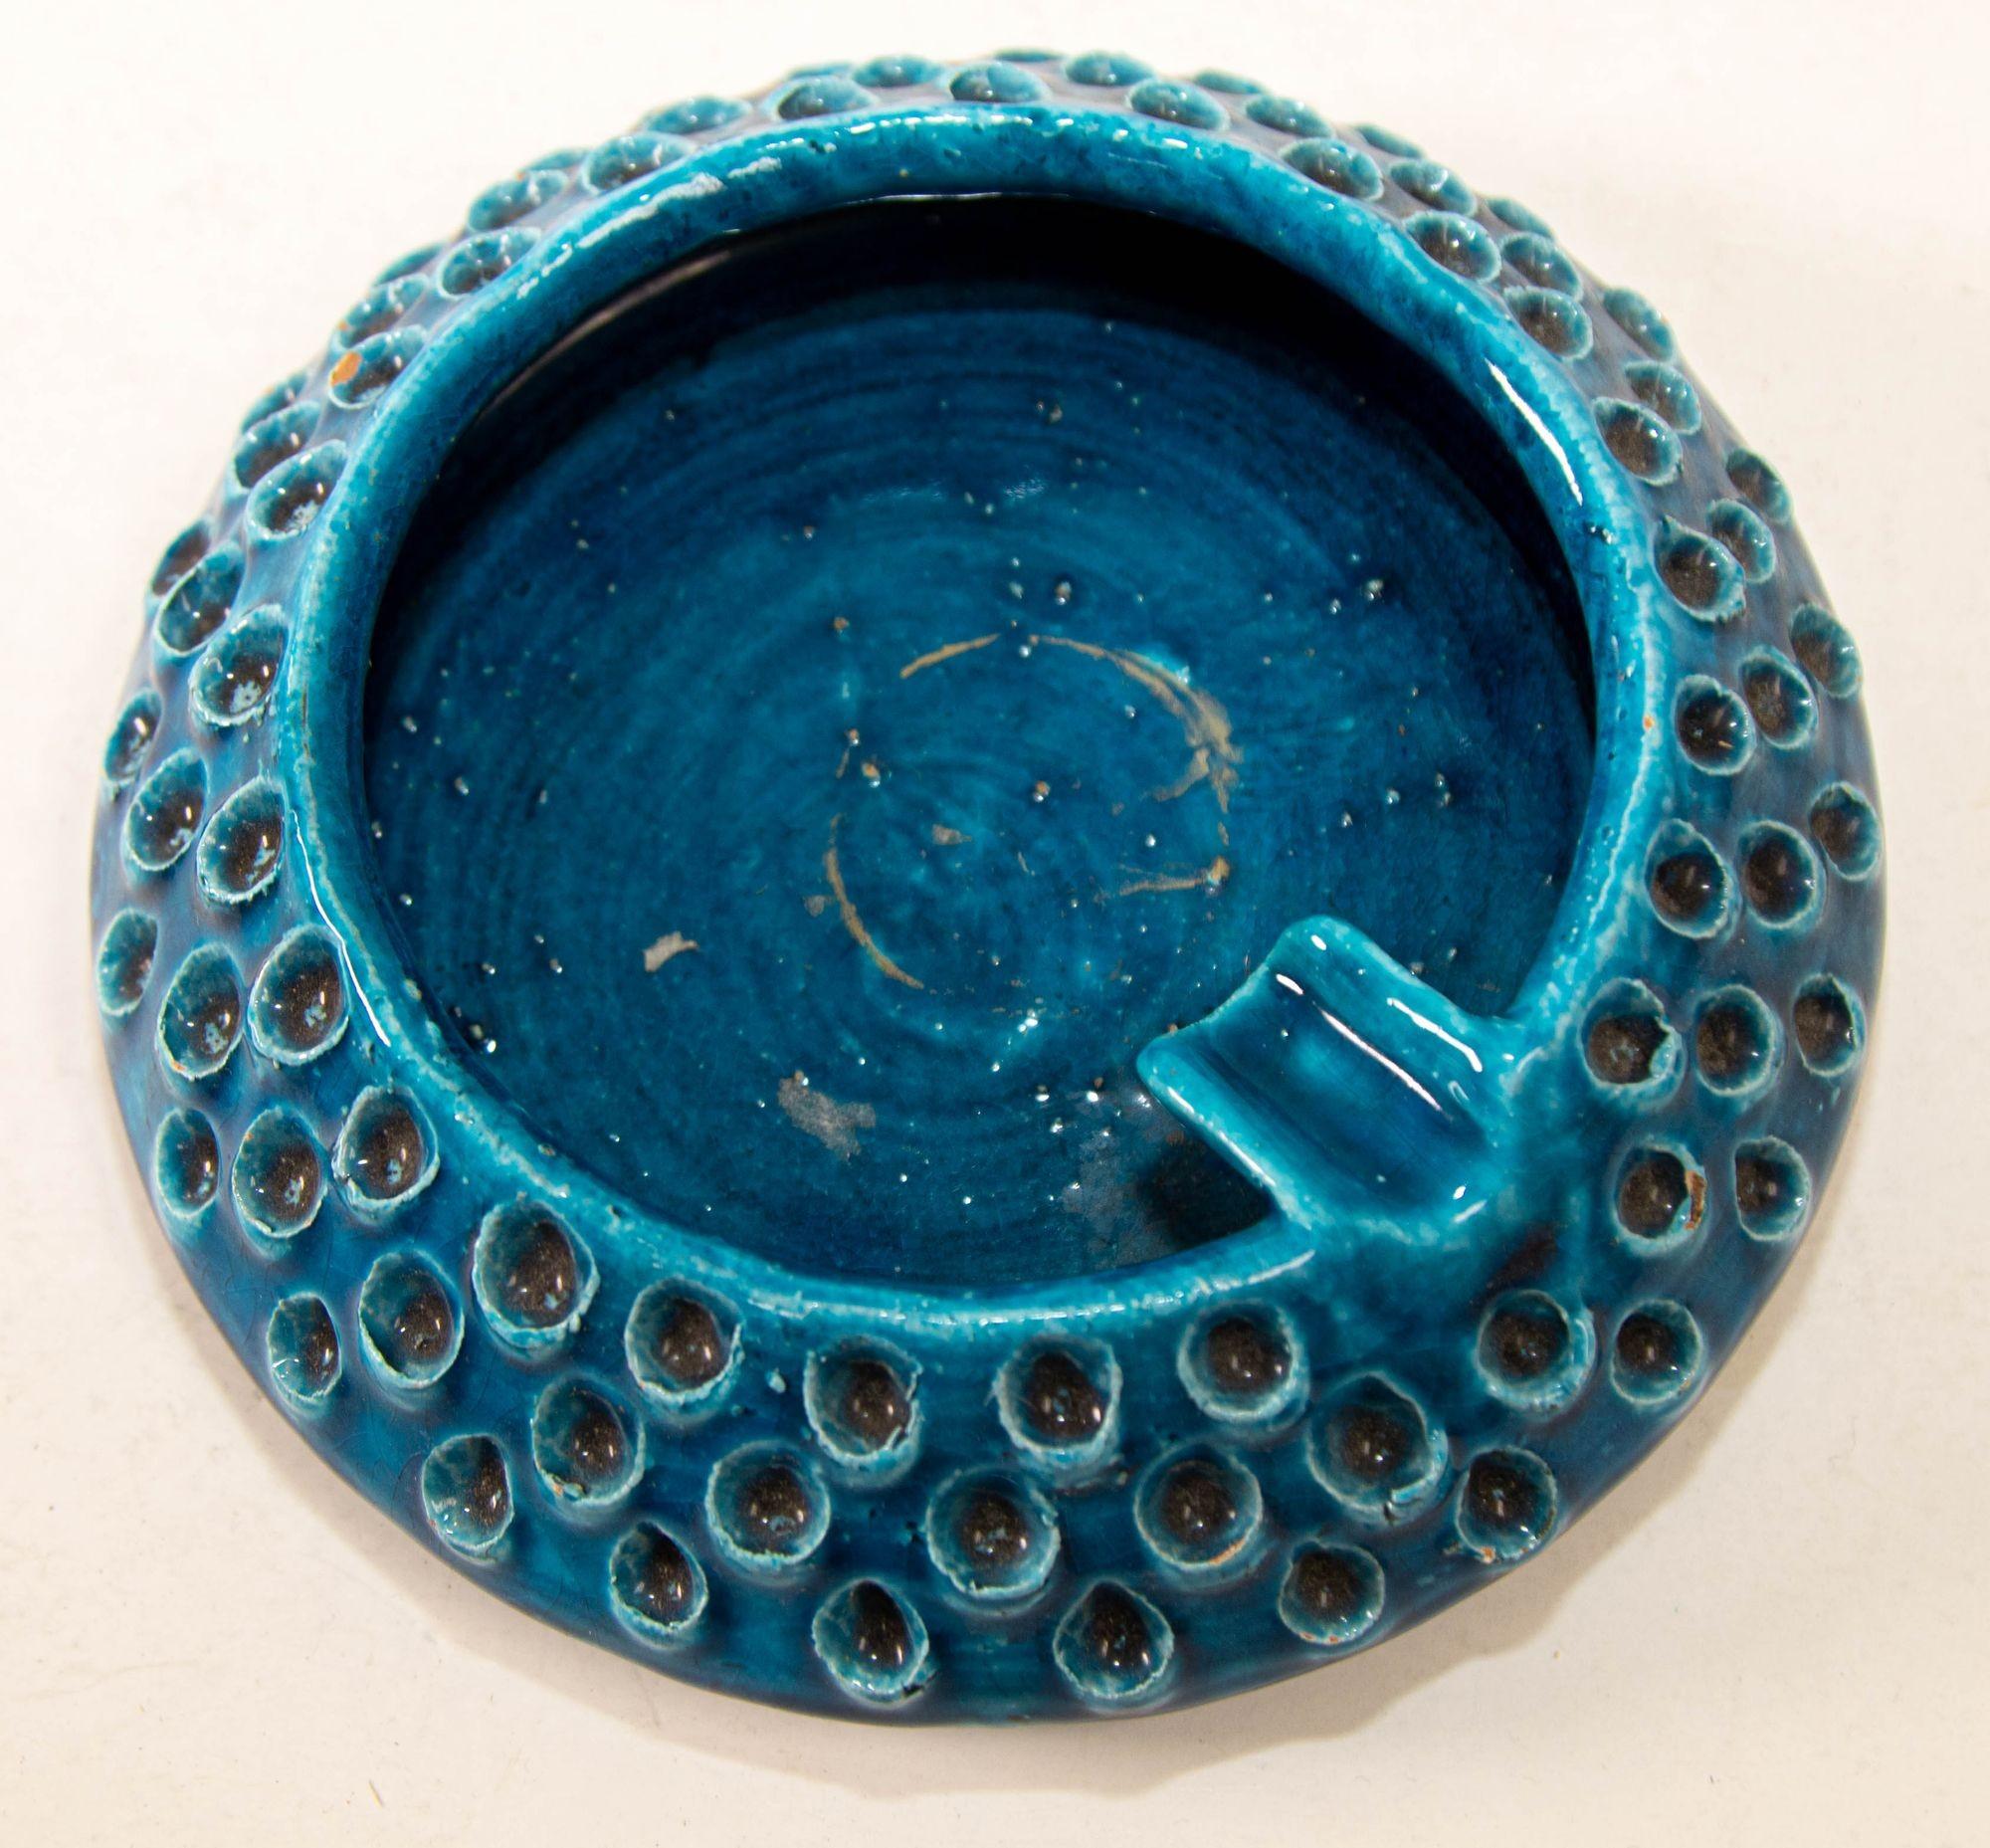 Aldo Londi for Bitossi Remini Blue Ceramic Ashtray Handcrafted in Italy
